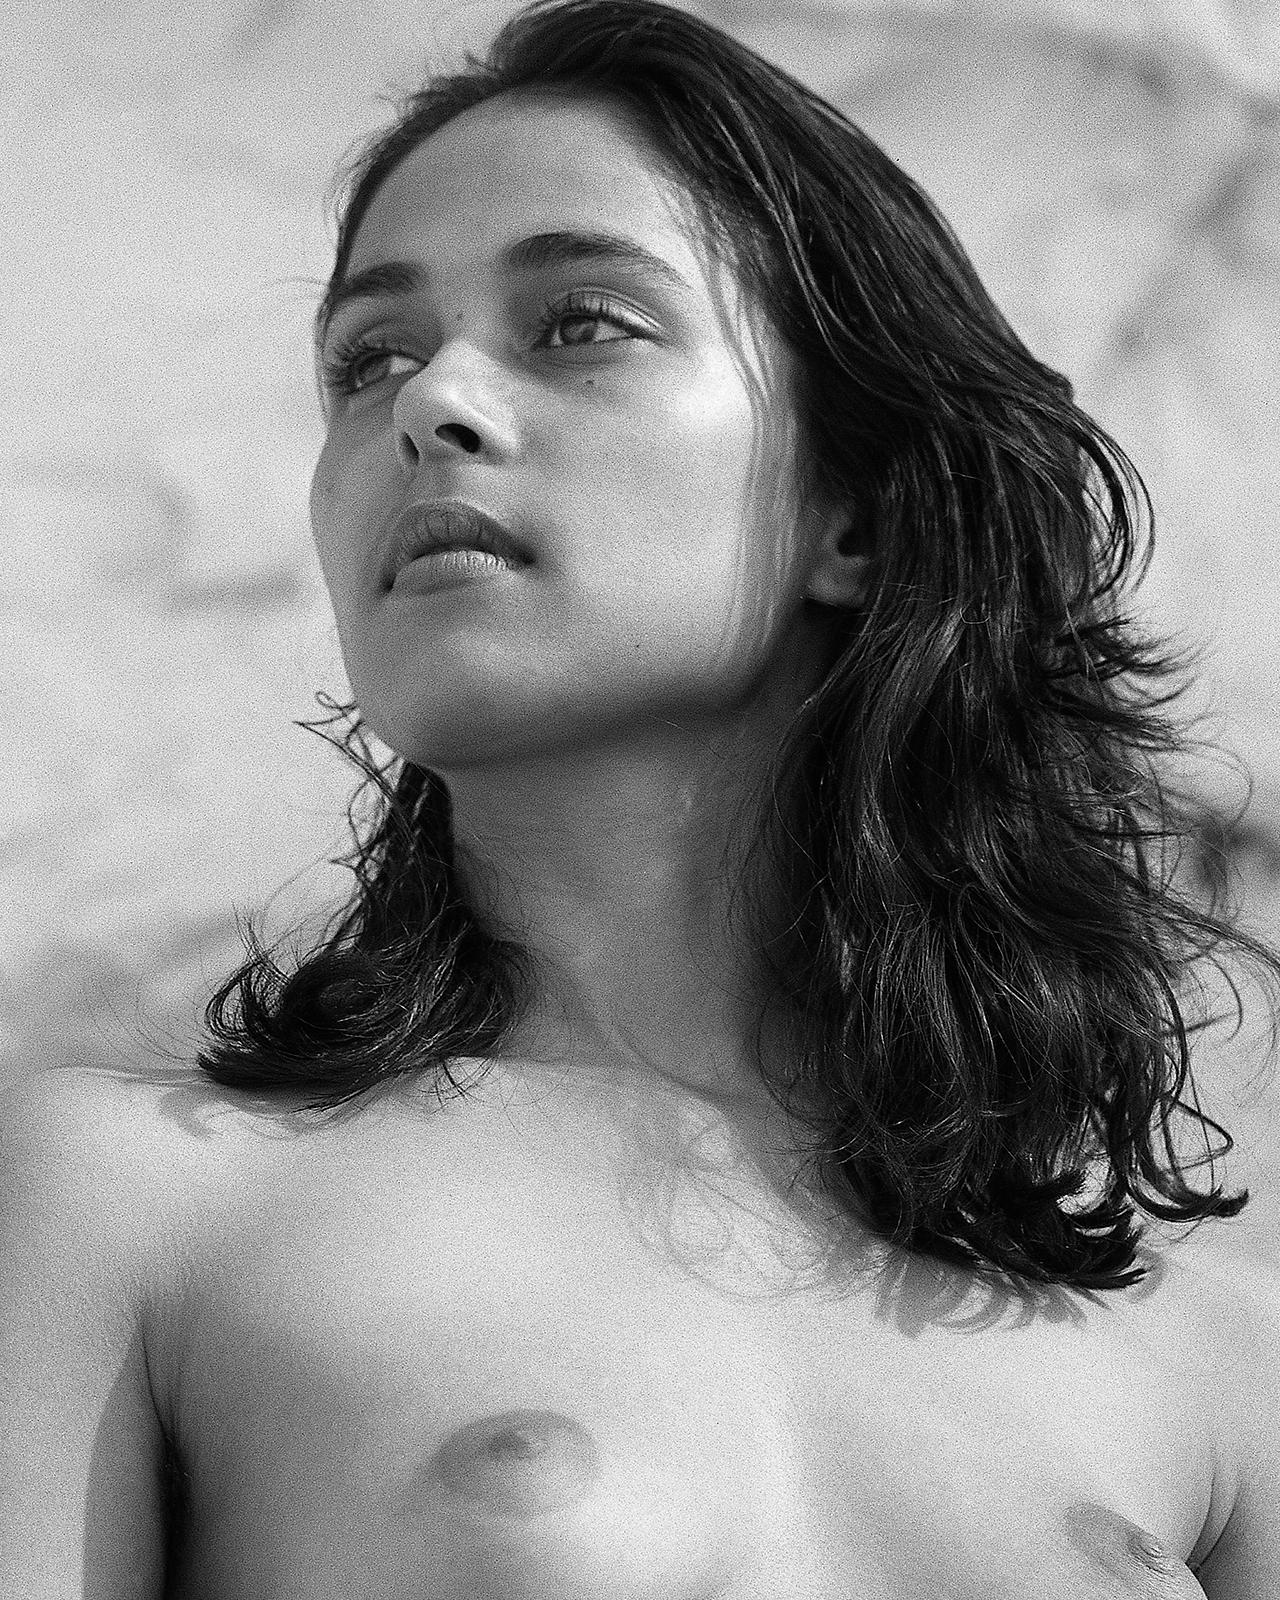 Zarina-Signierter Kunstdruck in limitierter Auflage, Schwarz-Weiß-Foto, zeitgenössisch,Sexuell – Photograph von Ian Sanderson